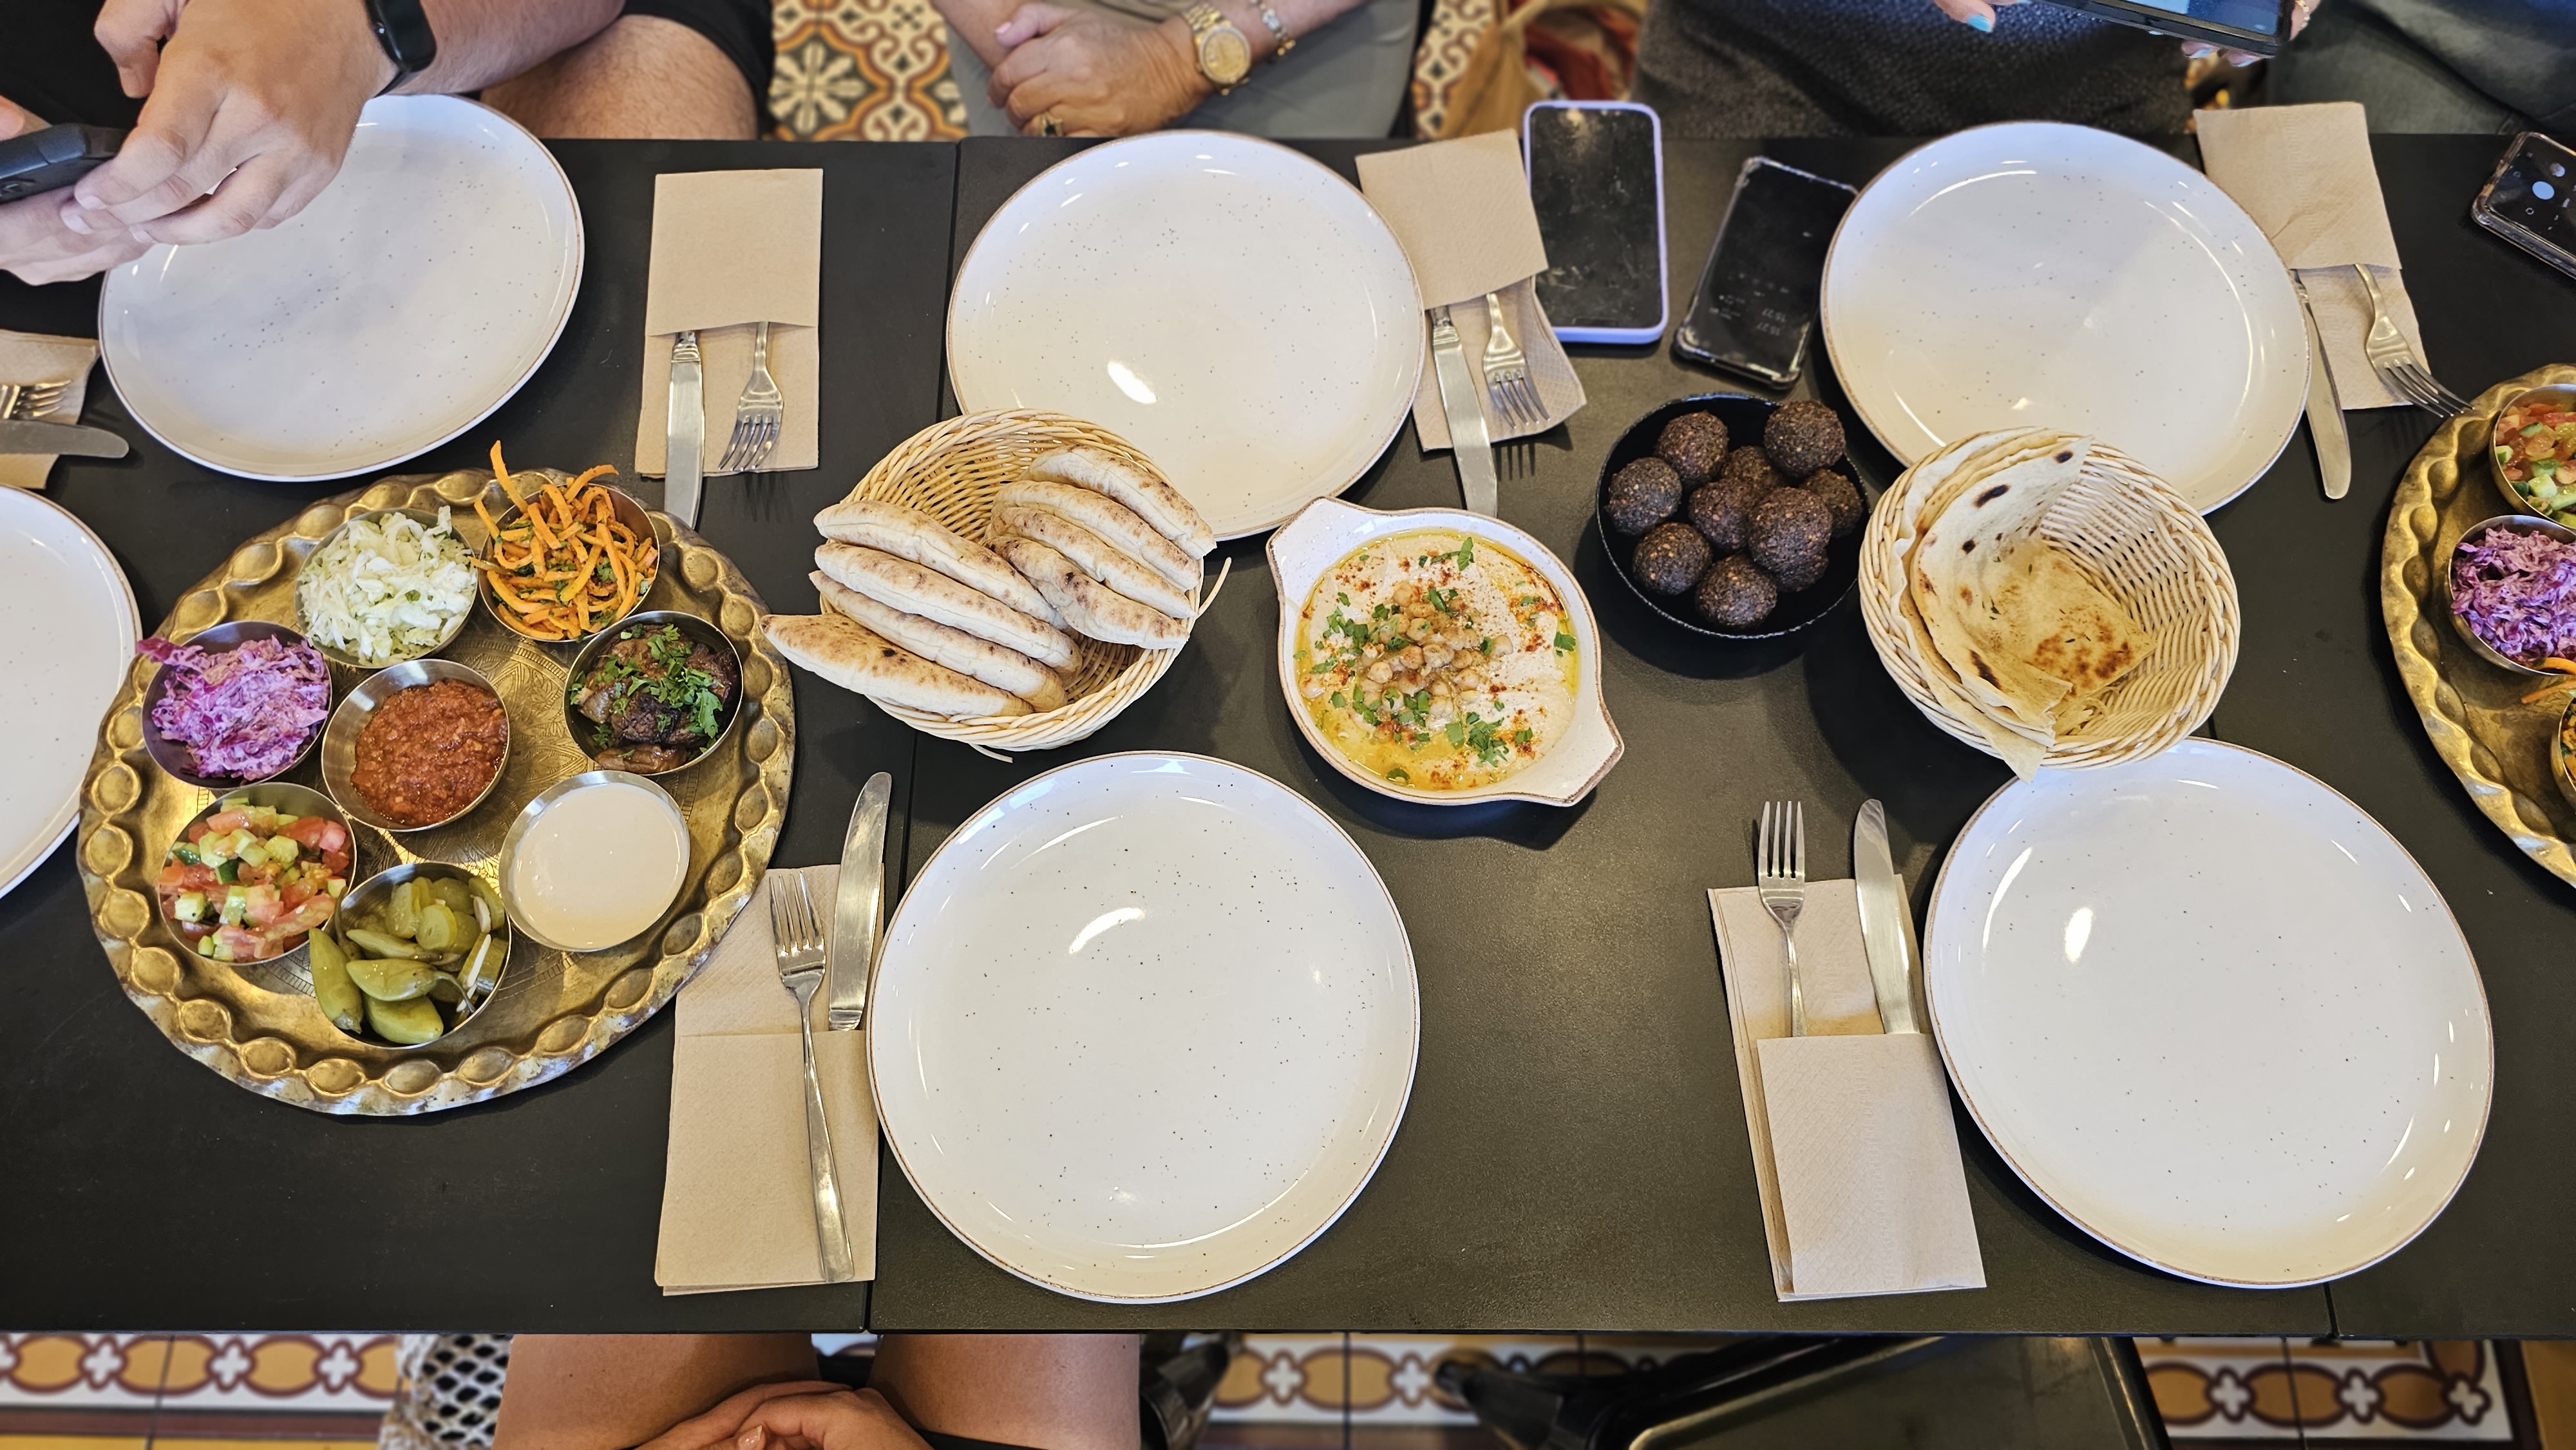 פותחים שולחן ישראלי במסעדת סבא. צילום: אירה מקיינקו